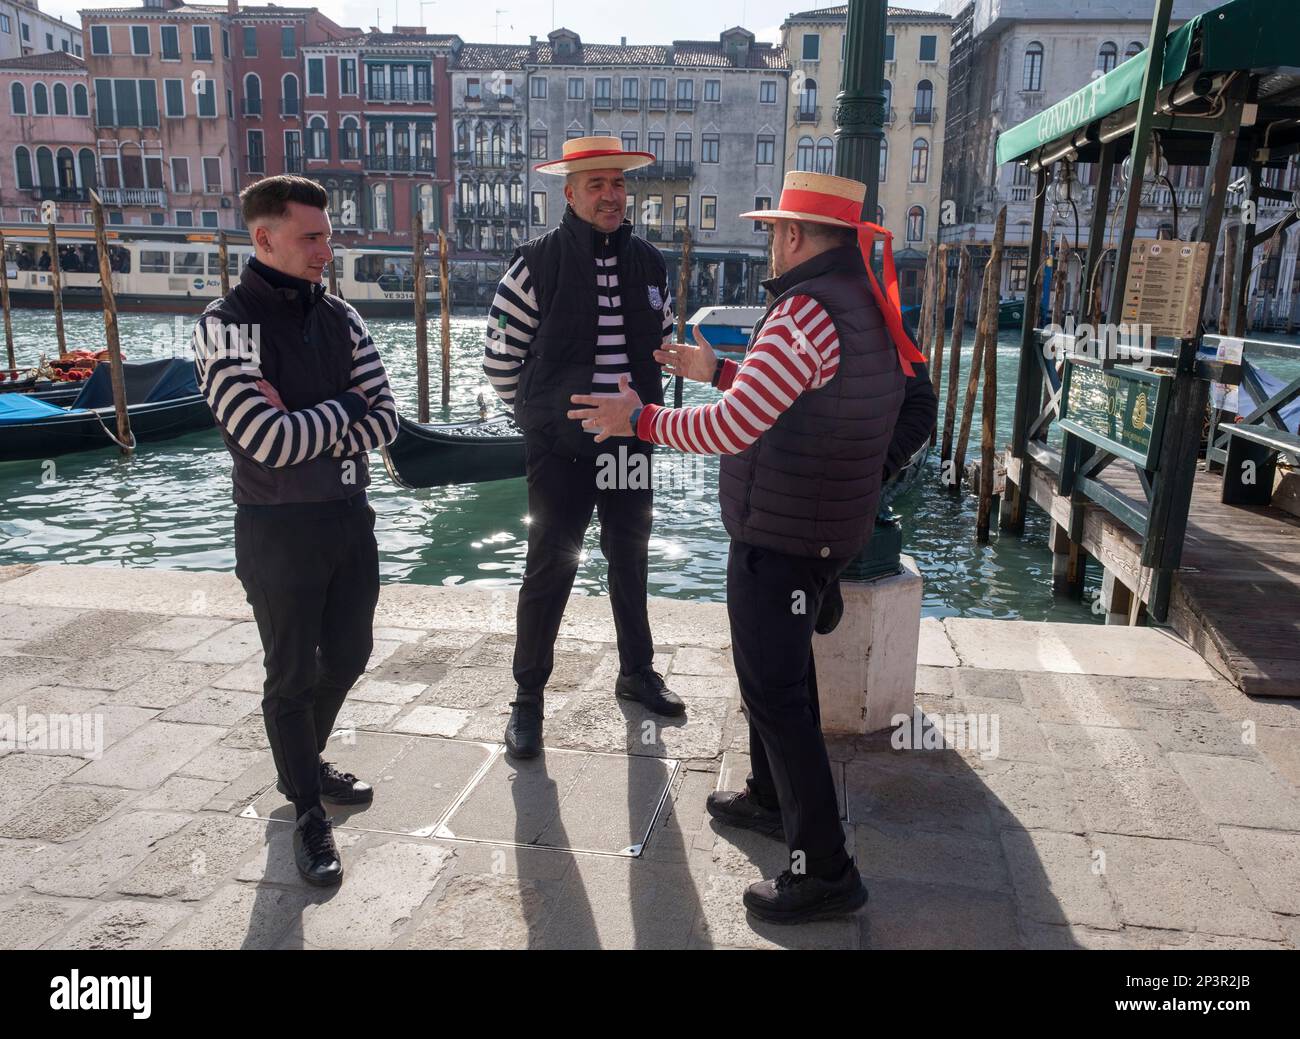 Les gondoliers de San Silvestro discutent avant de commencer les travaux sur le Grand Canal, Venise, Italie. Banque D'Images